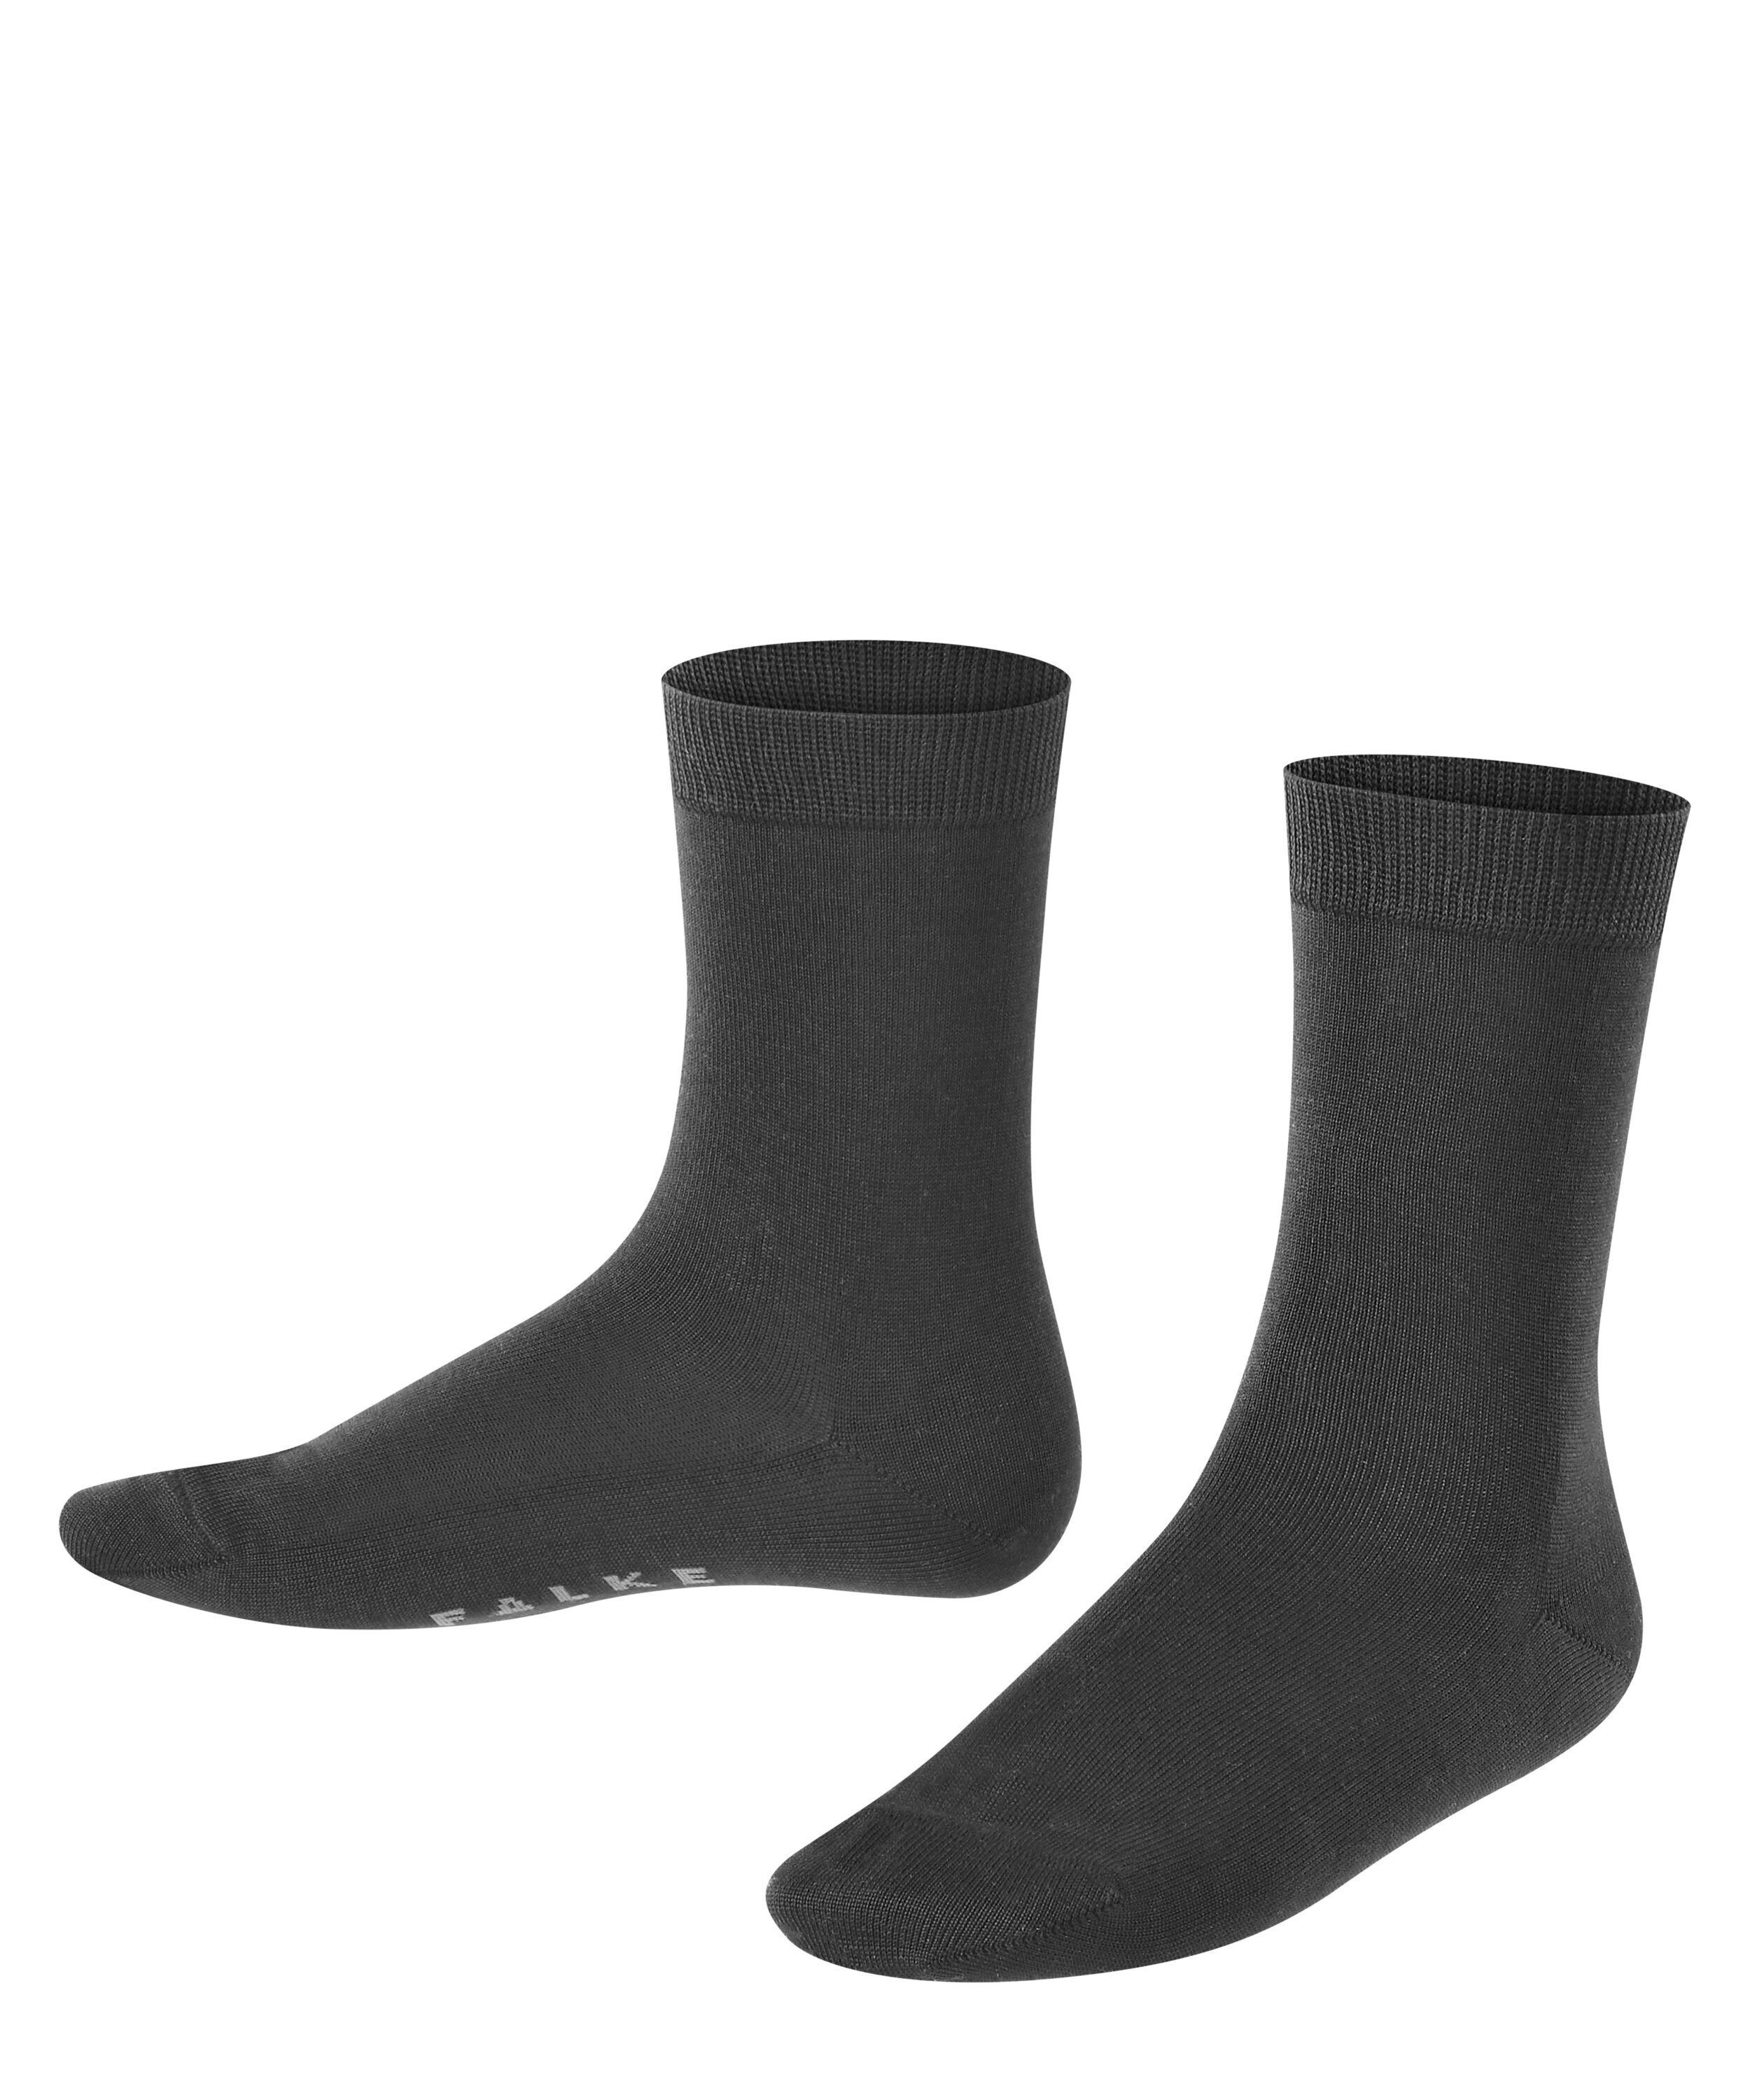 Falke B-Ware Cotton Touch 5 Paar Socken Sonderpreis Gr 35-38 Söckchen Set D15 